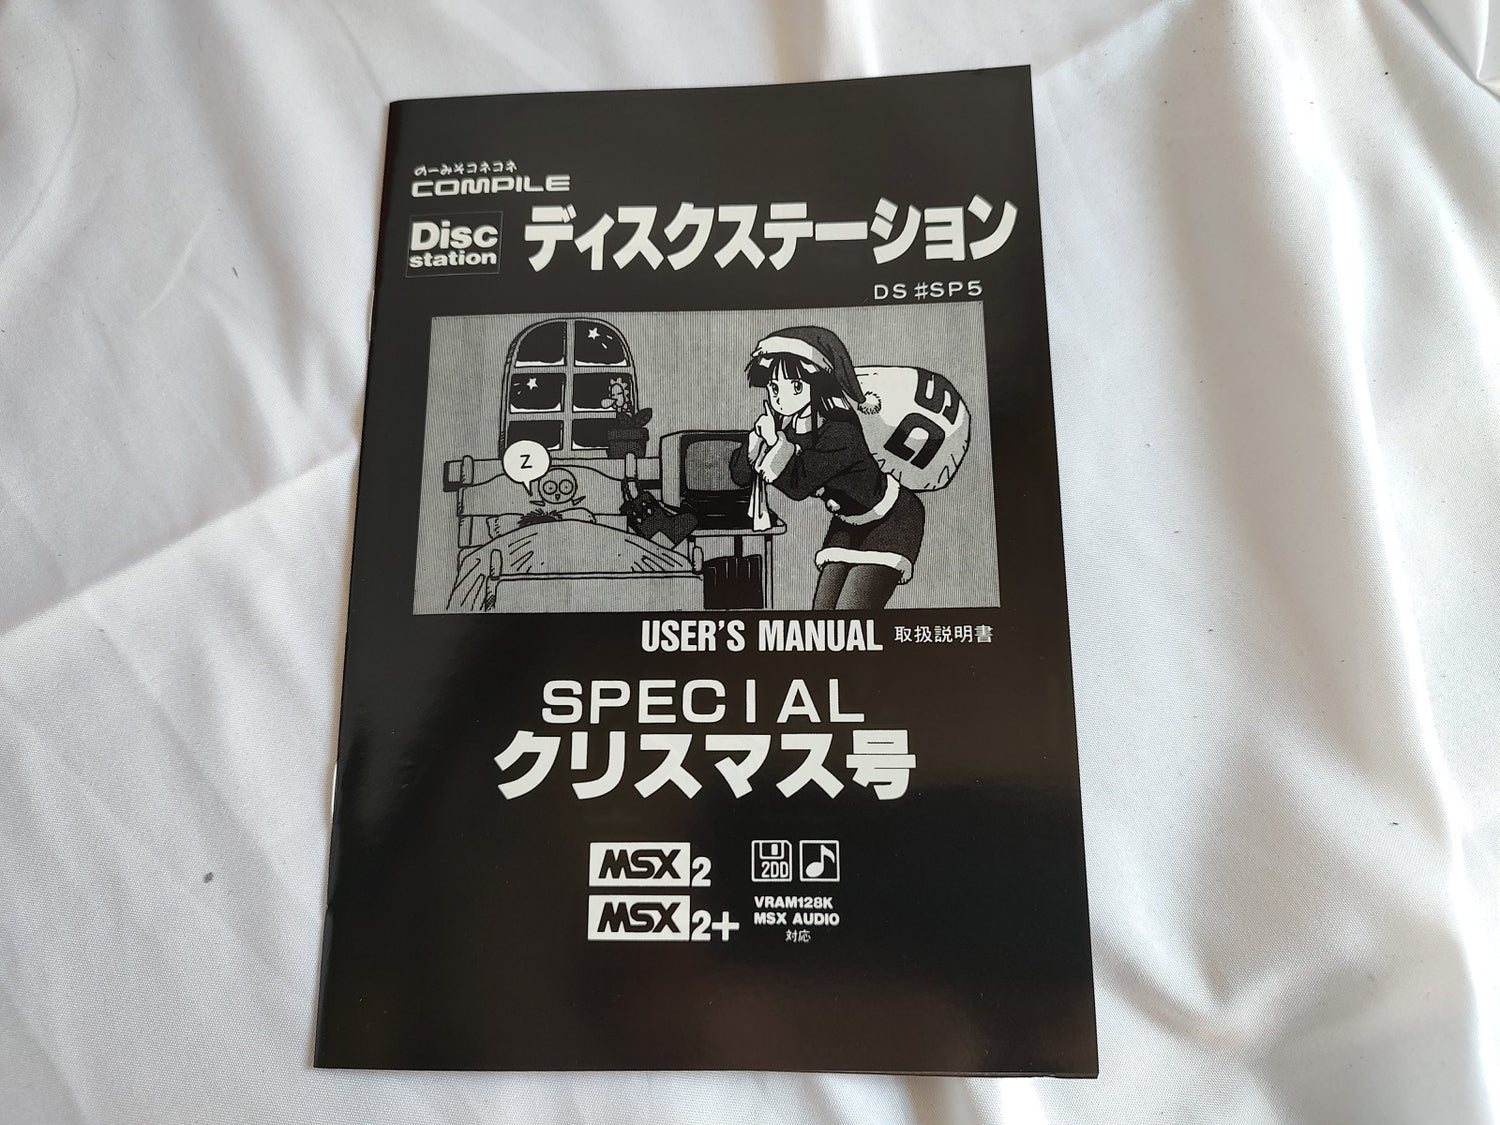 Project EGG Mado Monogatari Kyukyoku Taizen Windows game, limited